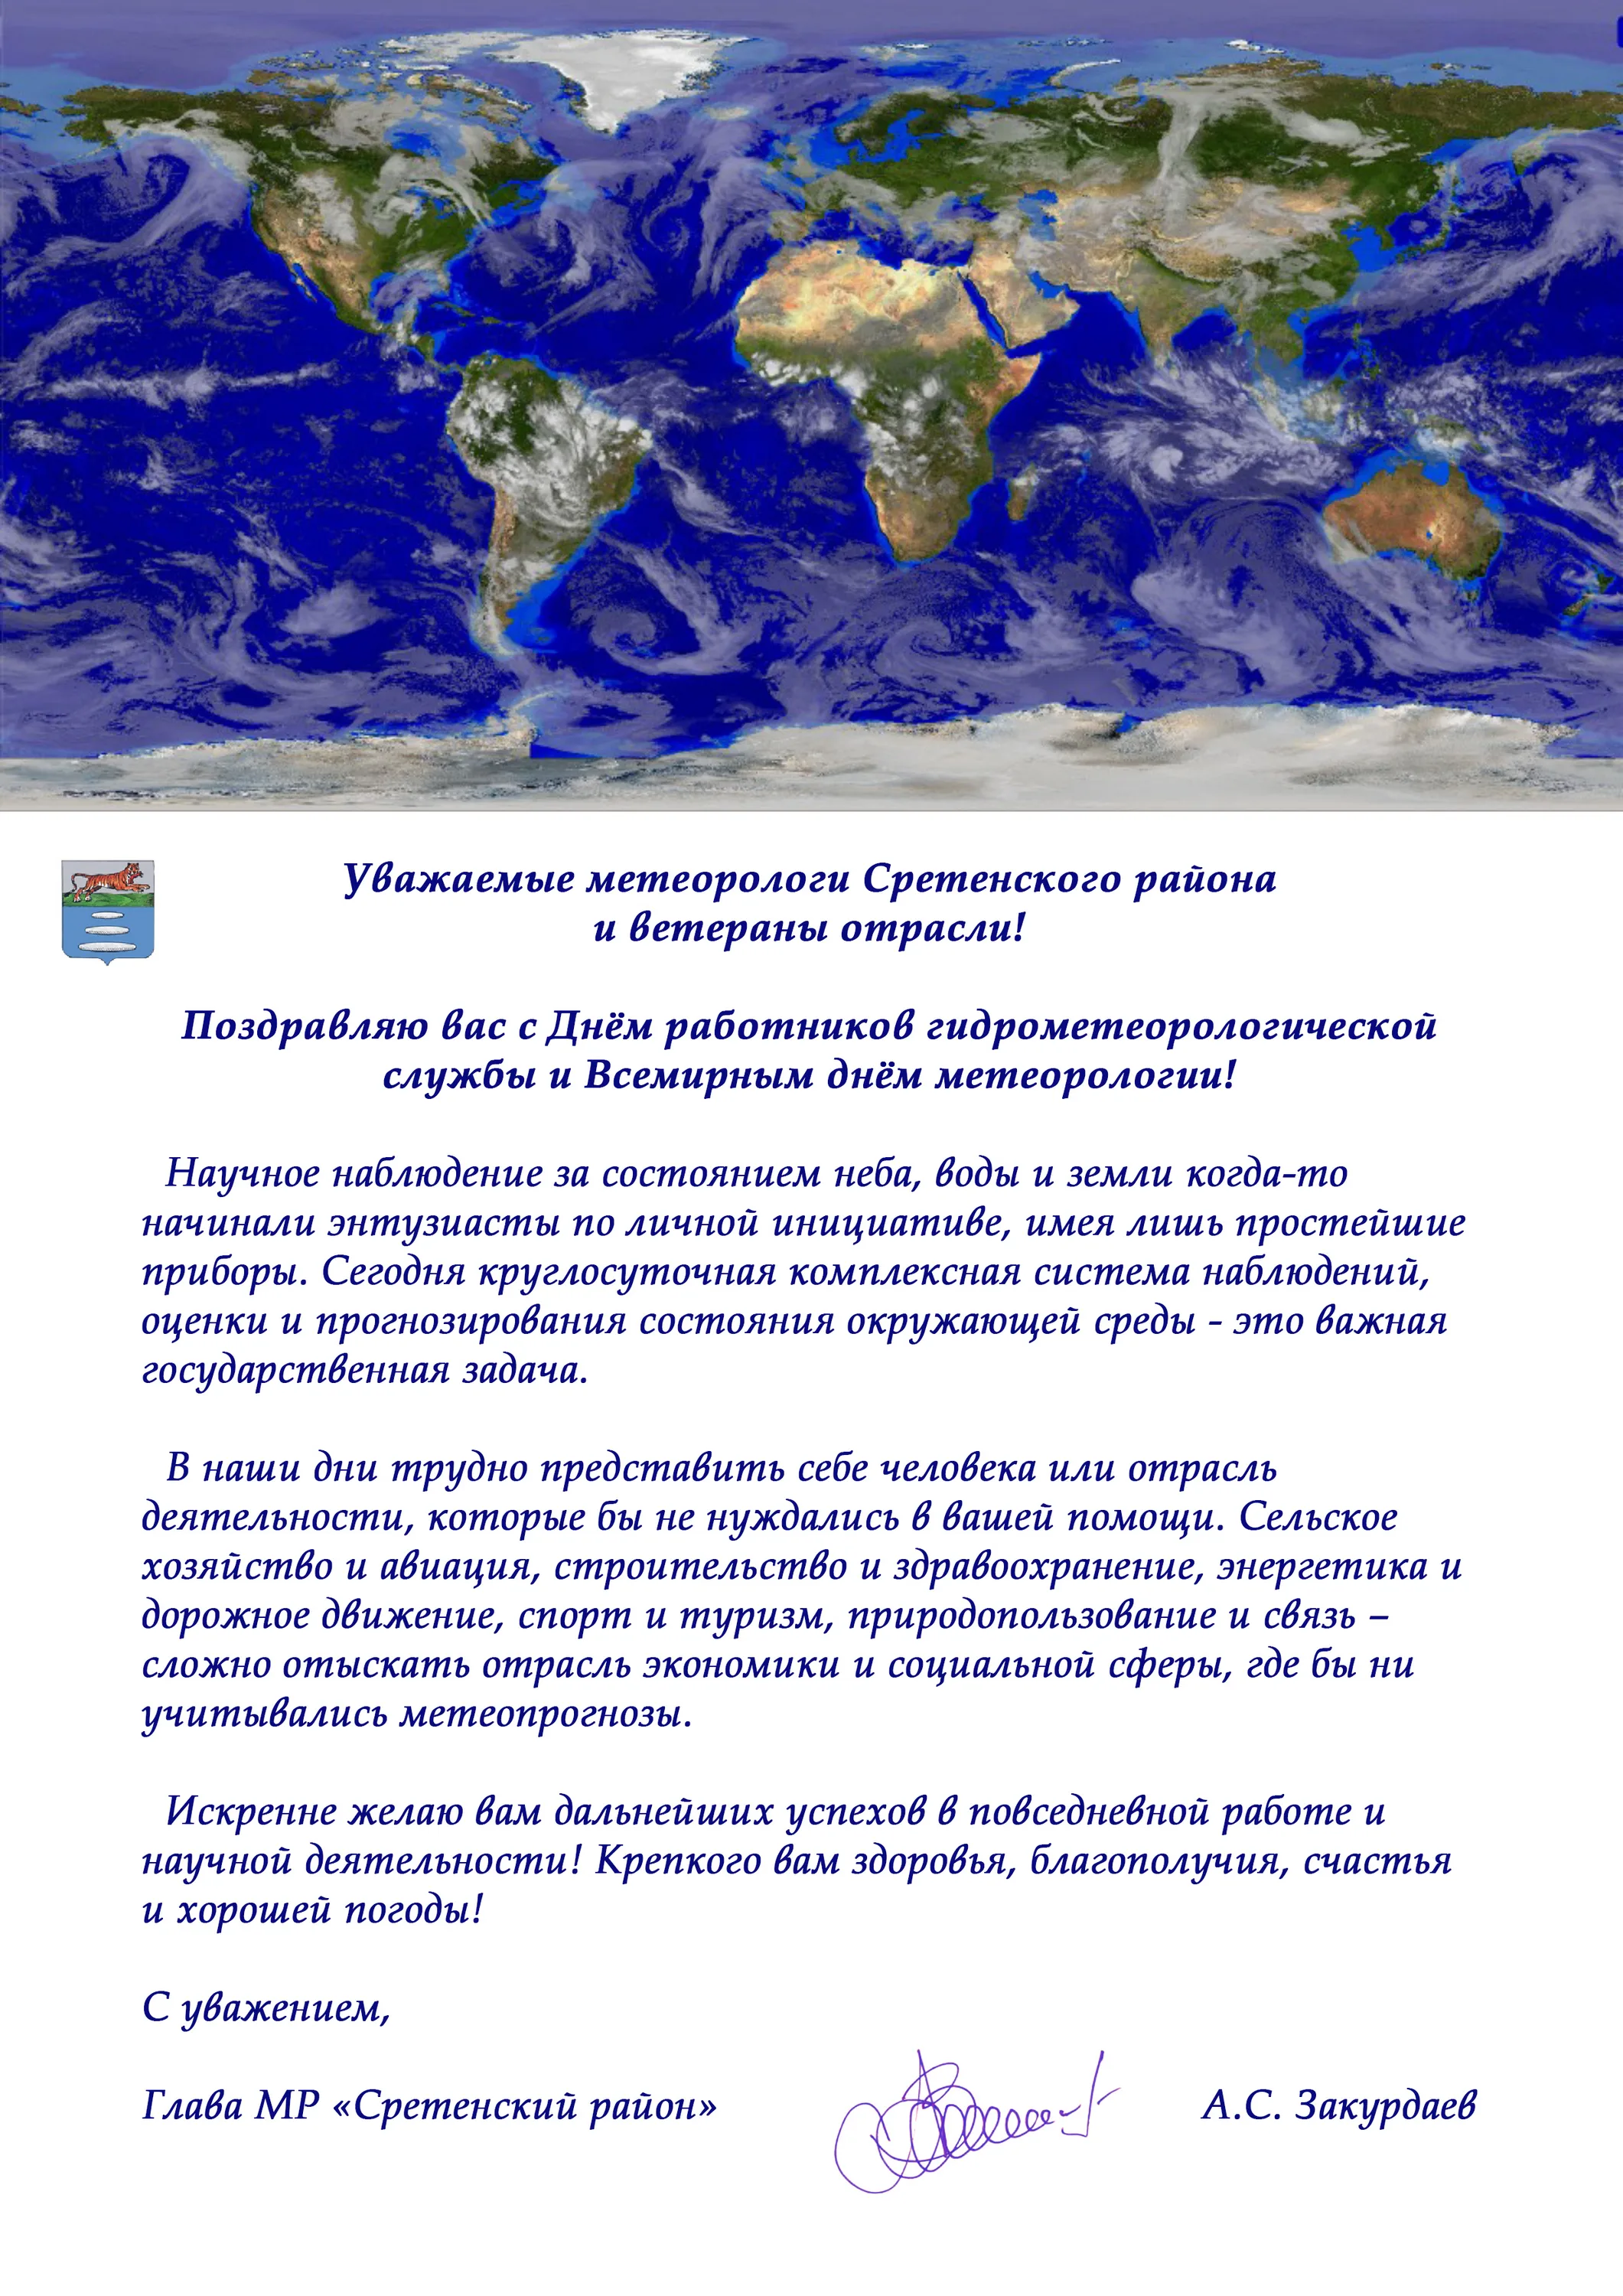 Фото День гидрометеорологической службы Украины #34